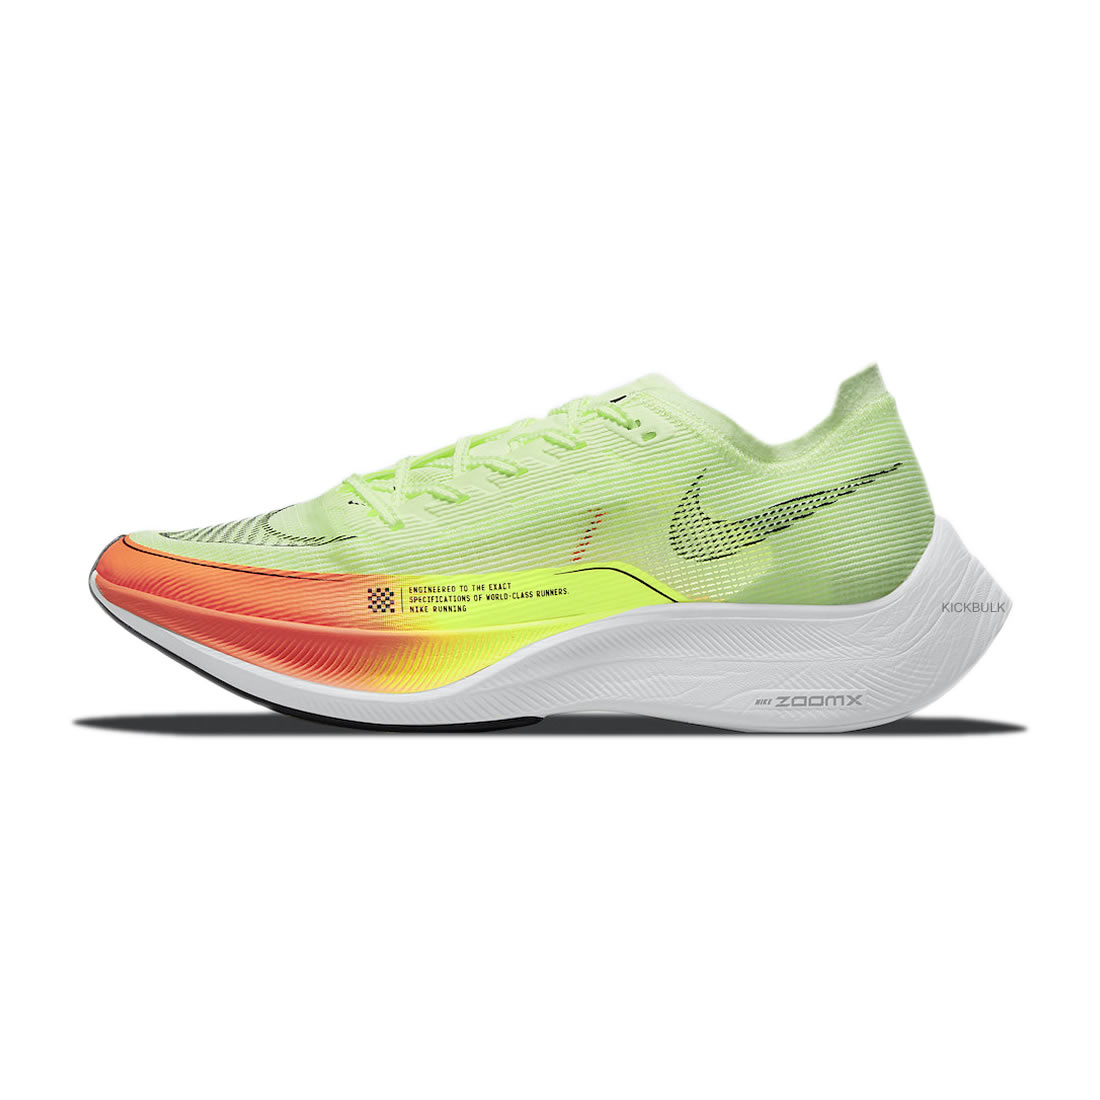 Nike Zoomx Vaporfly Next Neon Cu4111 700 1 - www.kickbulk.co